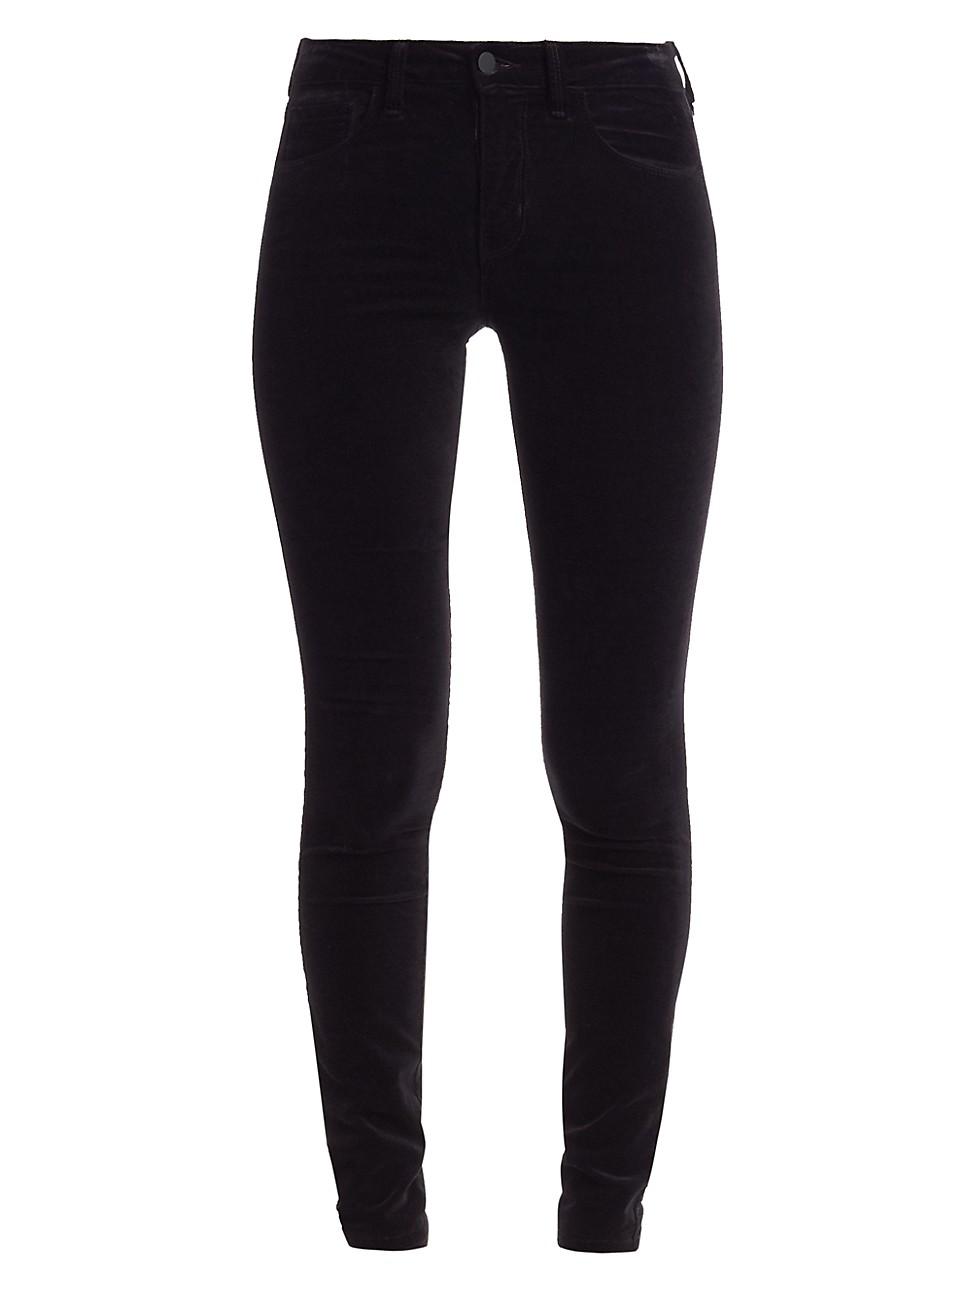 L'Agence Marguerite High-rise Velvet Skinny Jeans in Black - Lyst